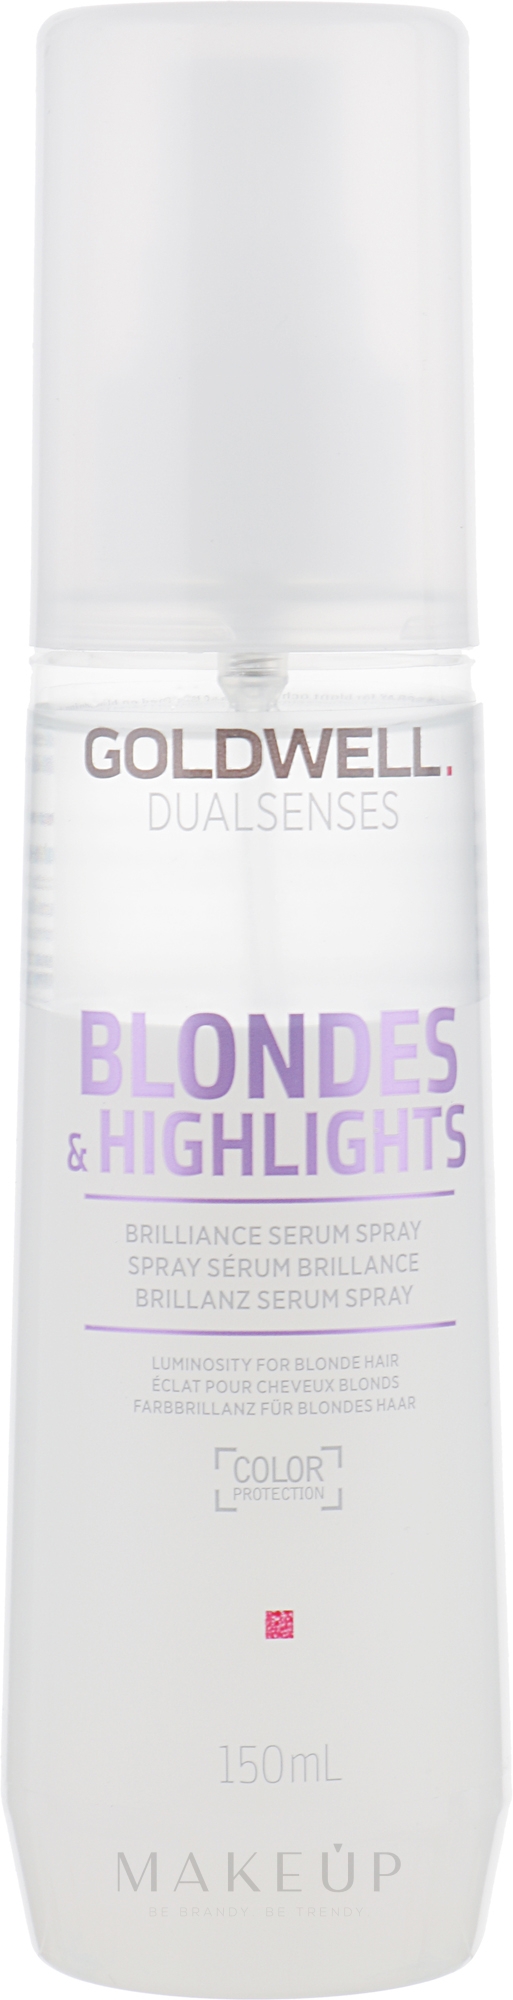 Brillanz Serum Spray für blondes und gesträhntes Haar - Goldwell Dualsenses Blondes & Highlights Brilliance Serum Spray — Bild 150 ml